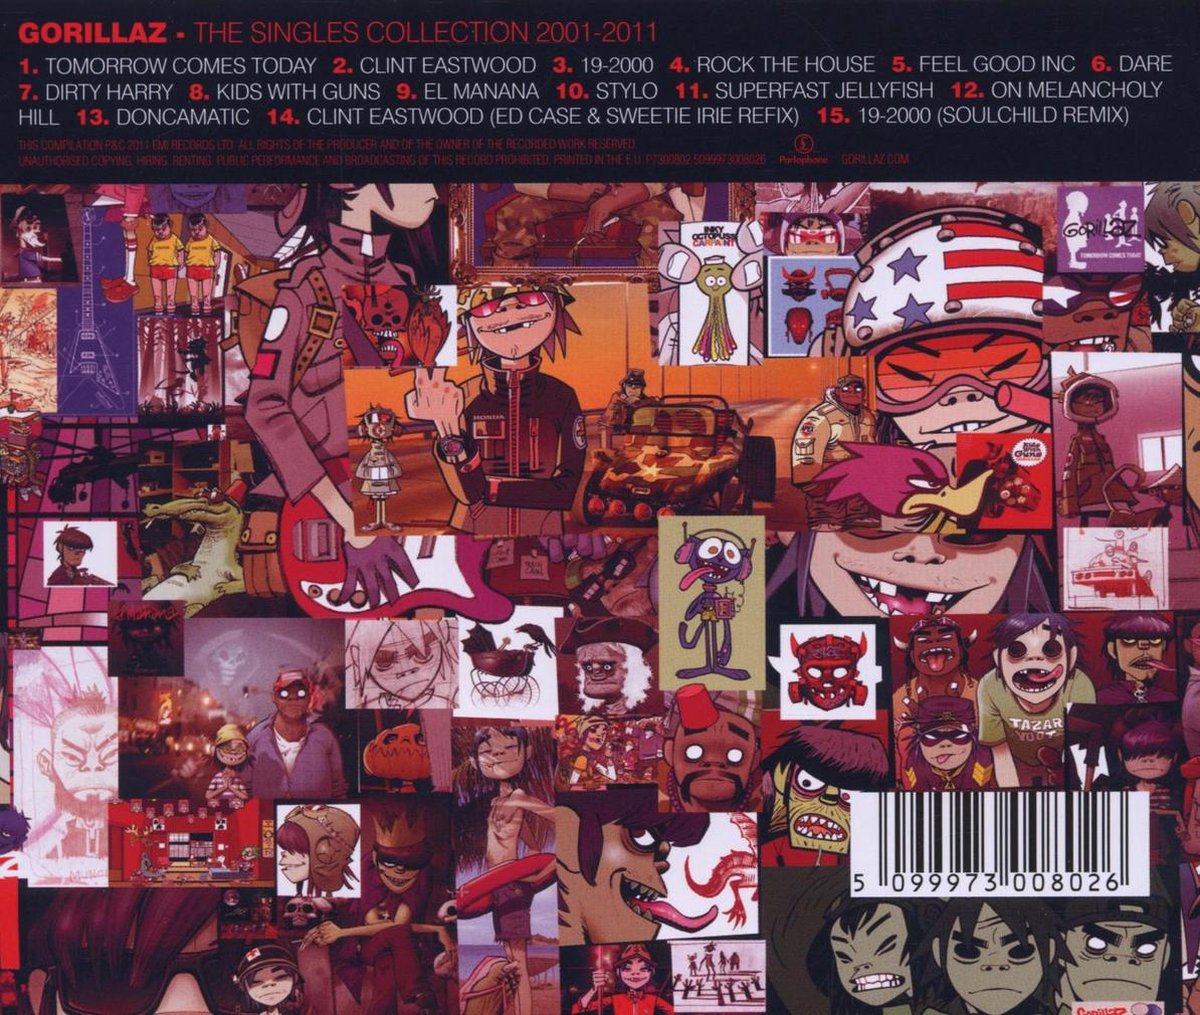 Группа gorillaz альбомы. The Singles collection 2001-2011 Gorillaz. Gorillaz альбом the Singles collection 2001-2011. Gorillaz collection Singles 2000. Gorillaz the Singles collection.